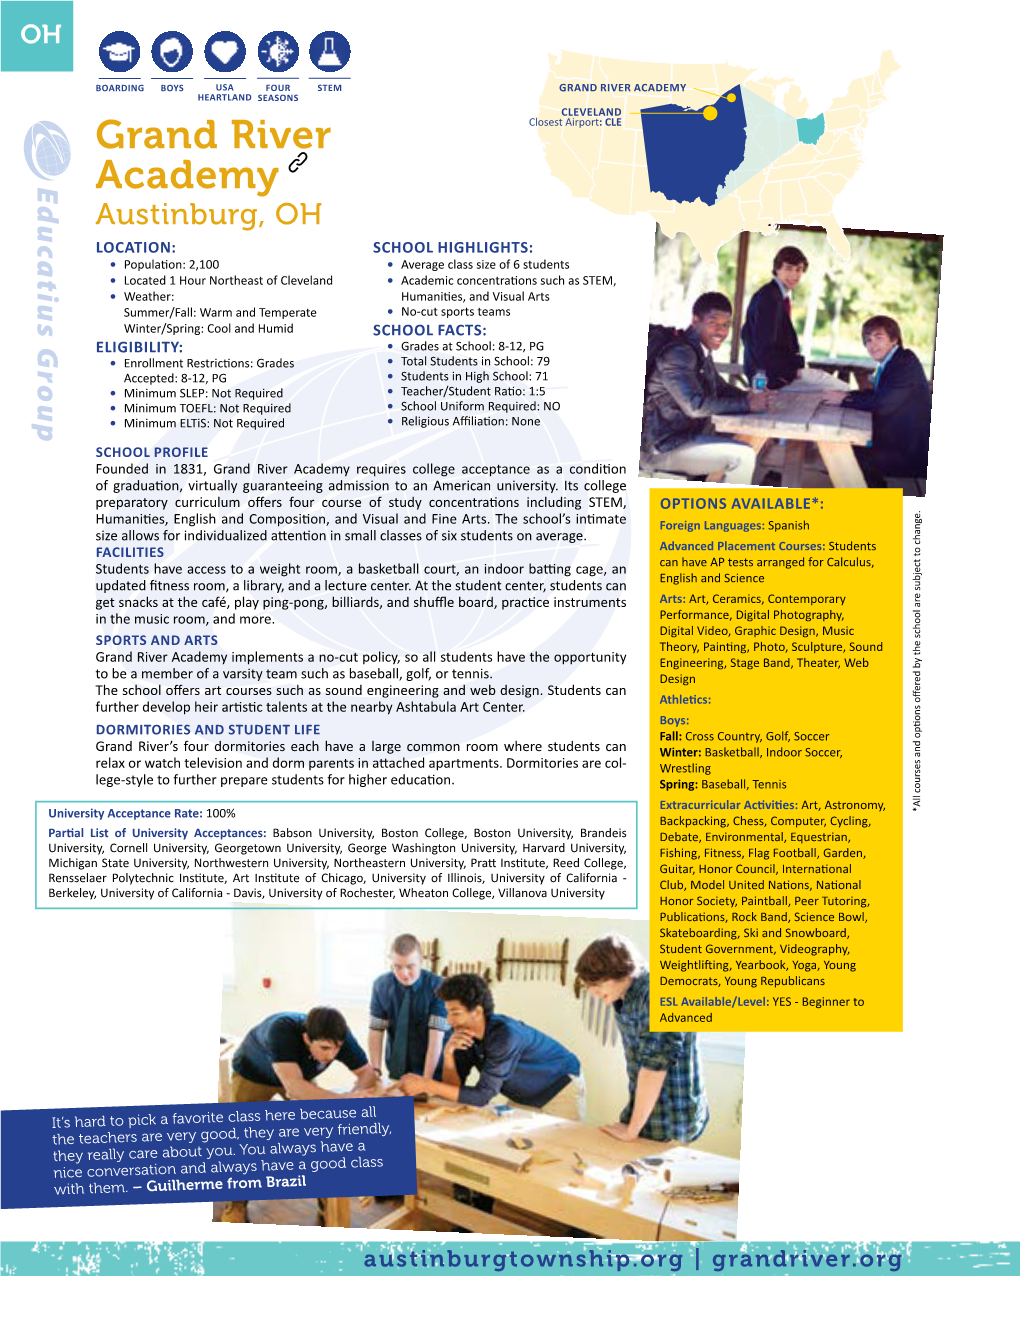 Grand River Academy Profile